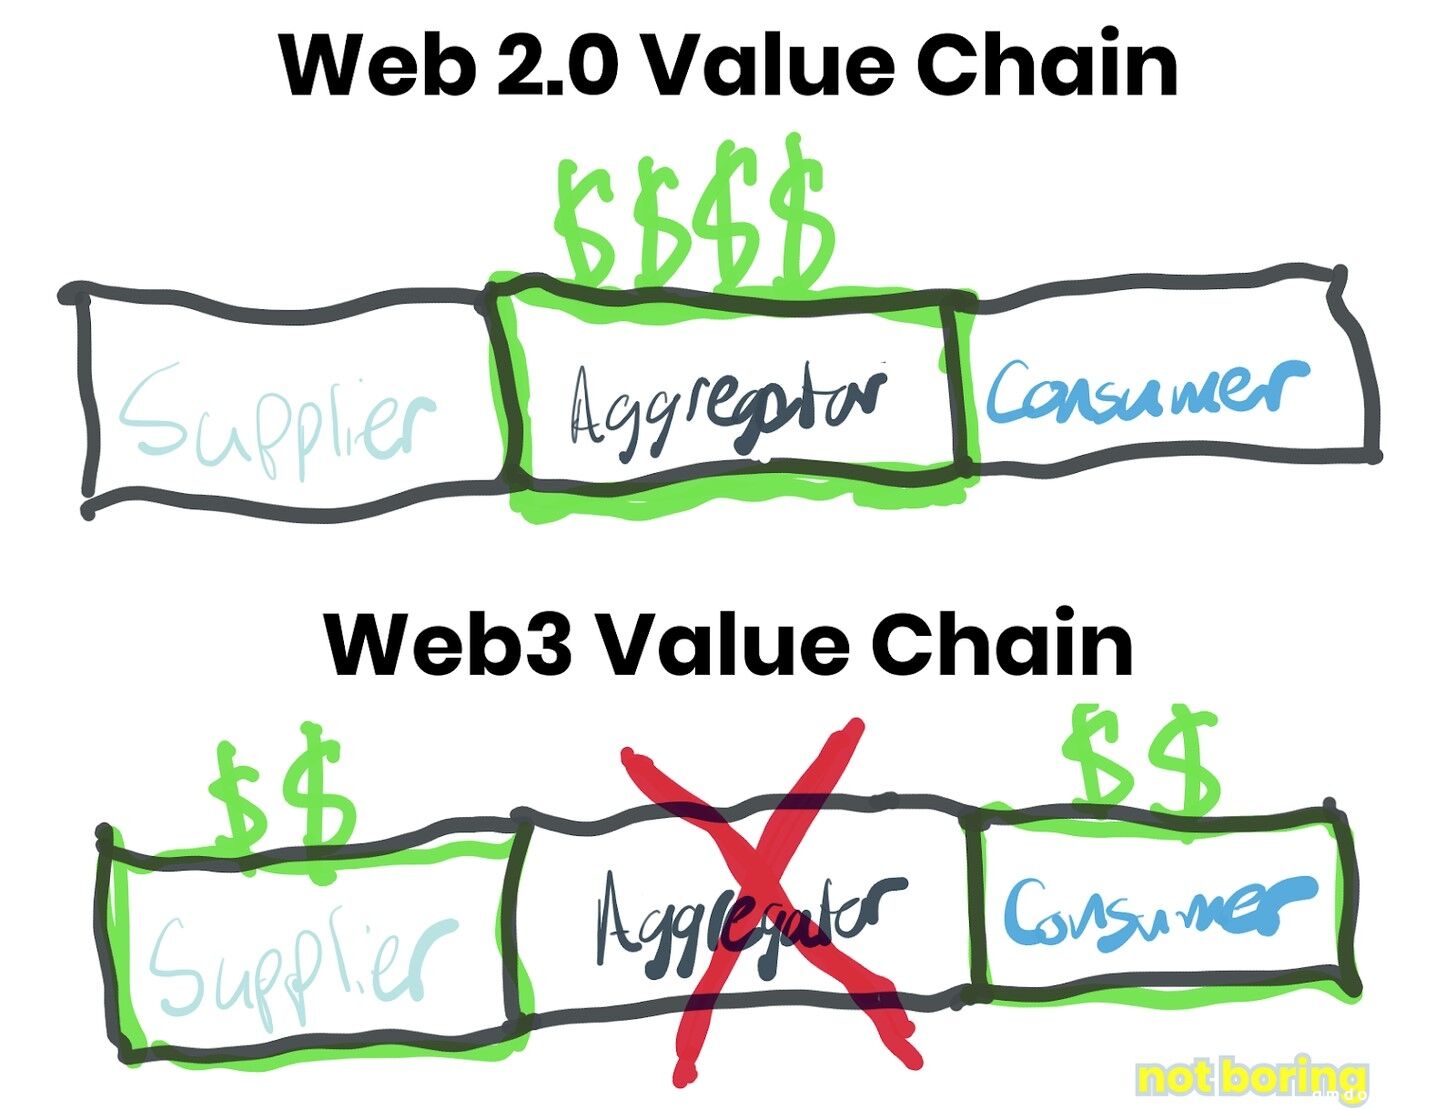 深度：Web 3去中心化时代，平台税行不通，Meta如何开放元宇宙价值链？